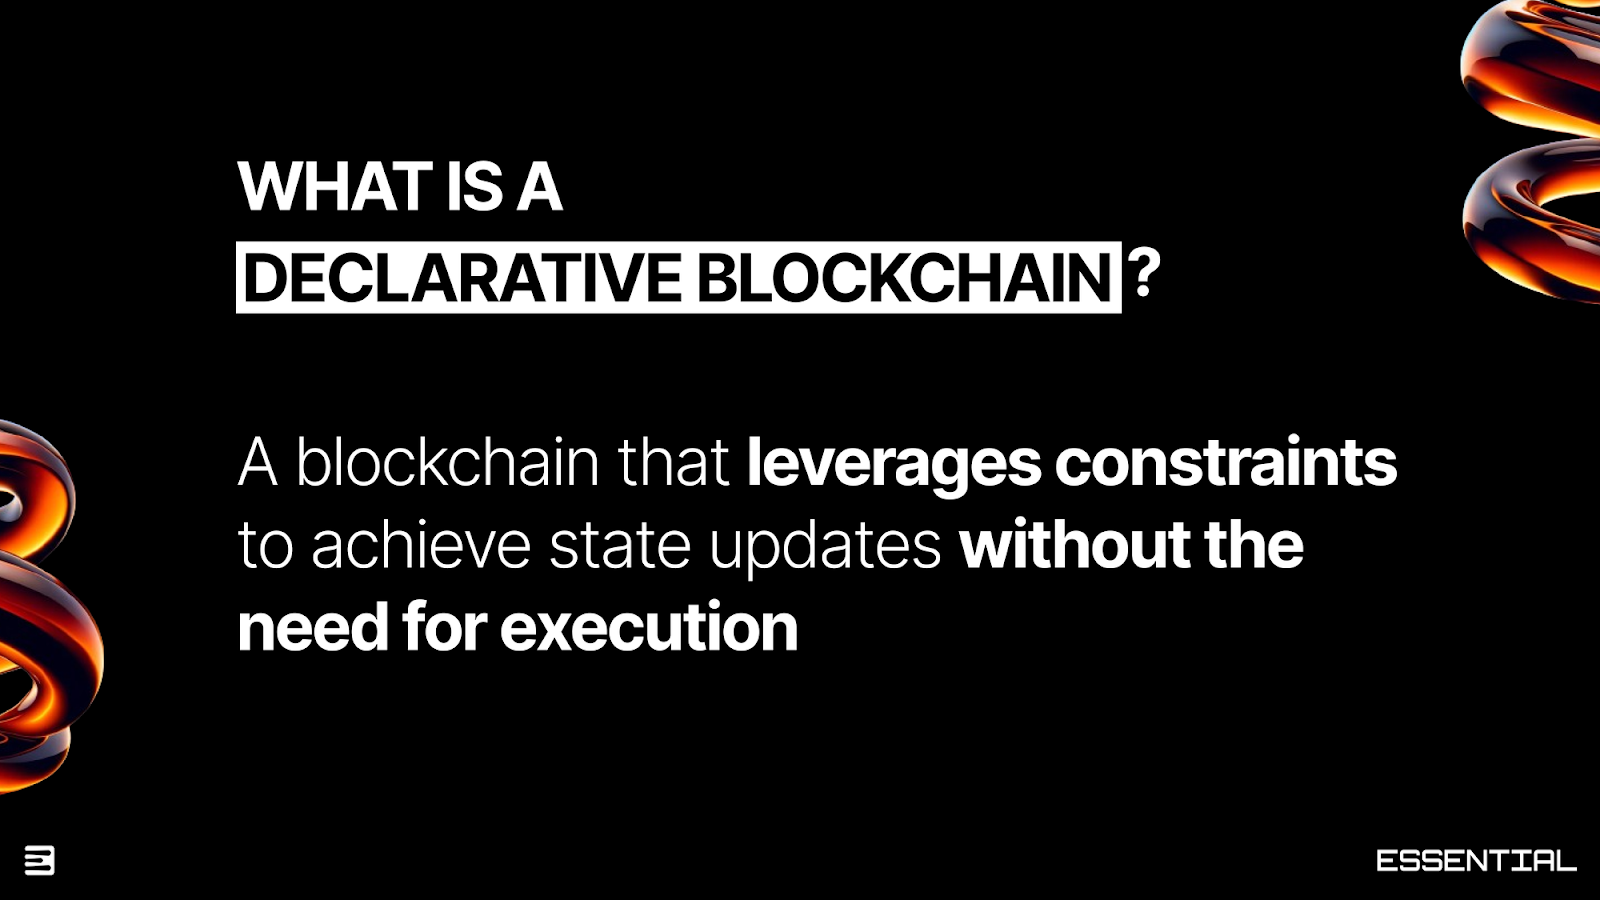 Essential: The First Declarative Blockchain